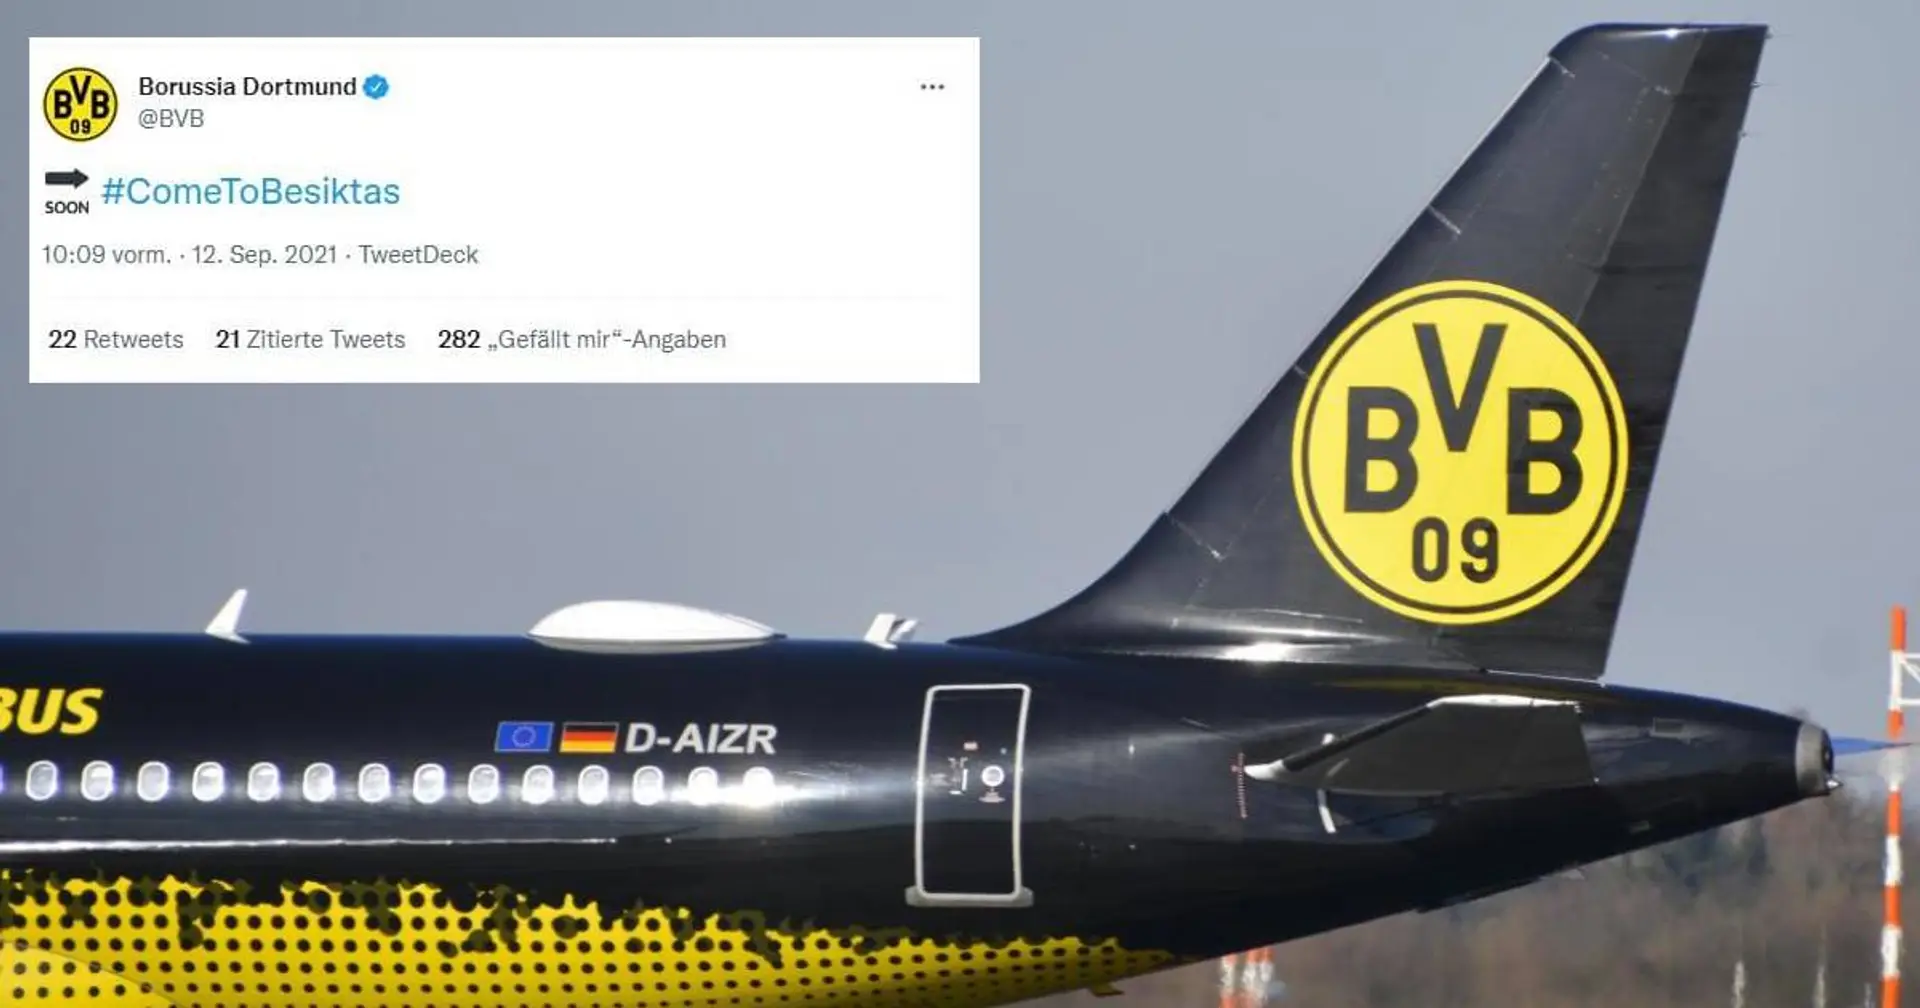 "Come to Besiktas": BVB trollt die Fans seines ersten Champions-League-Gegners auf Twitter